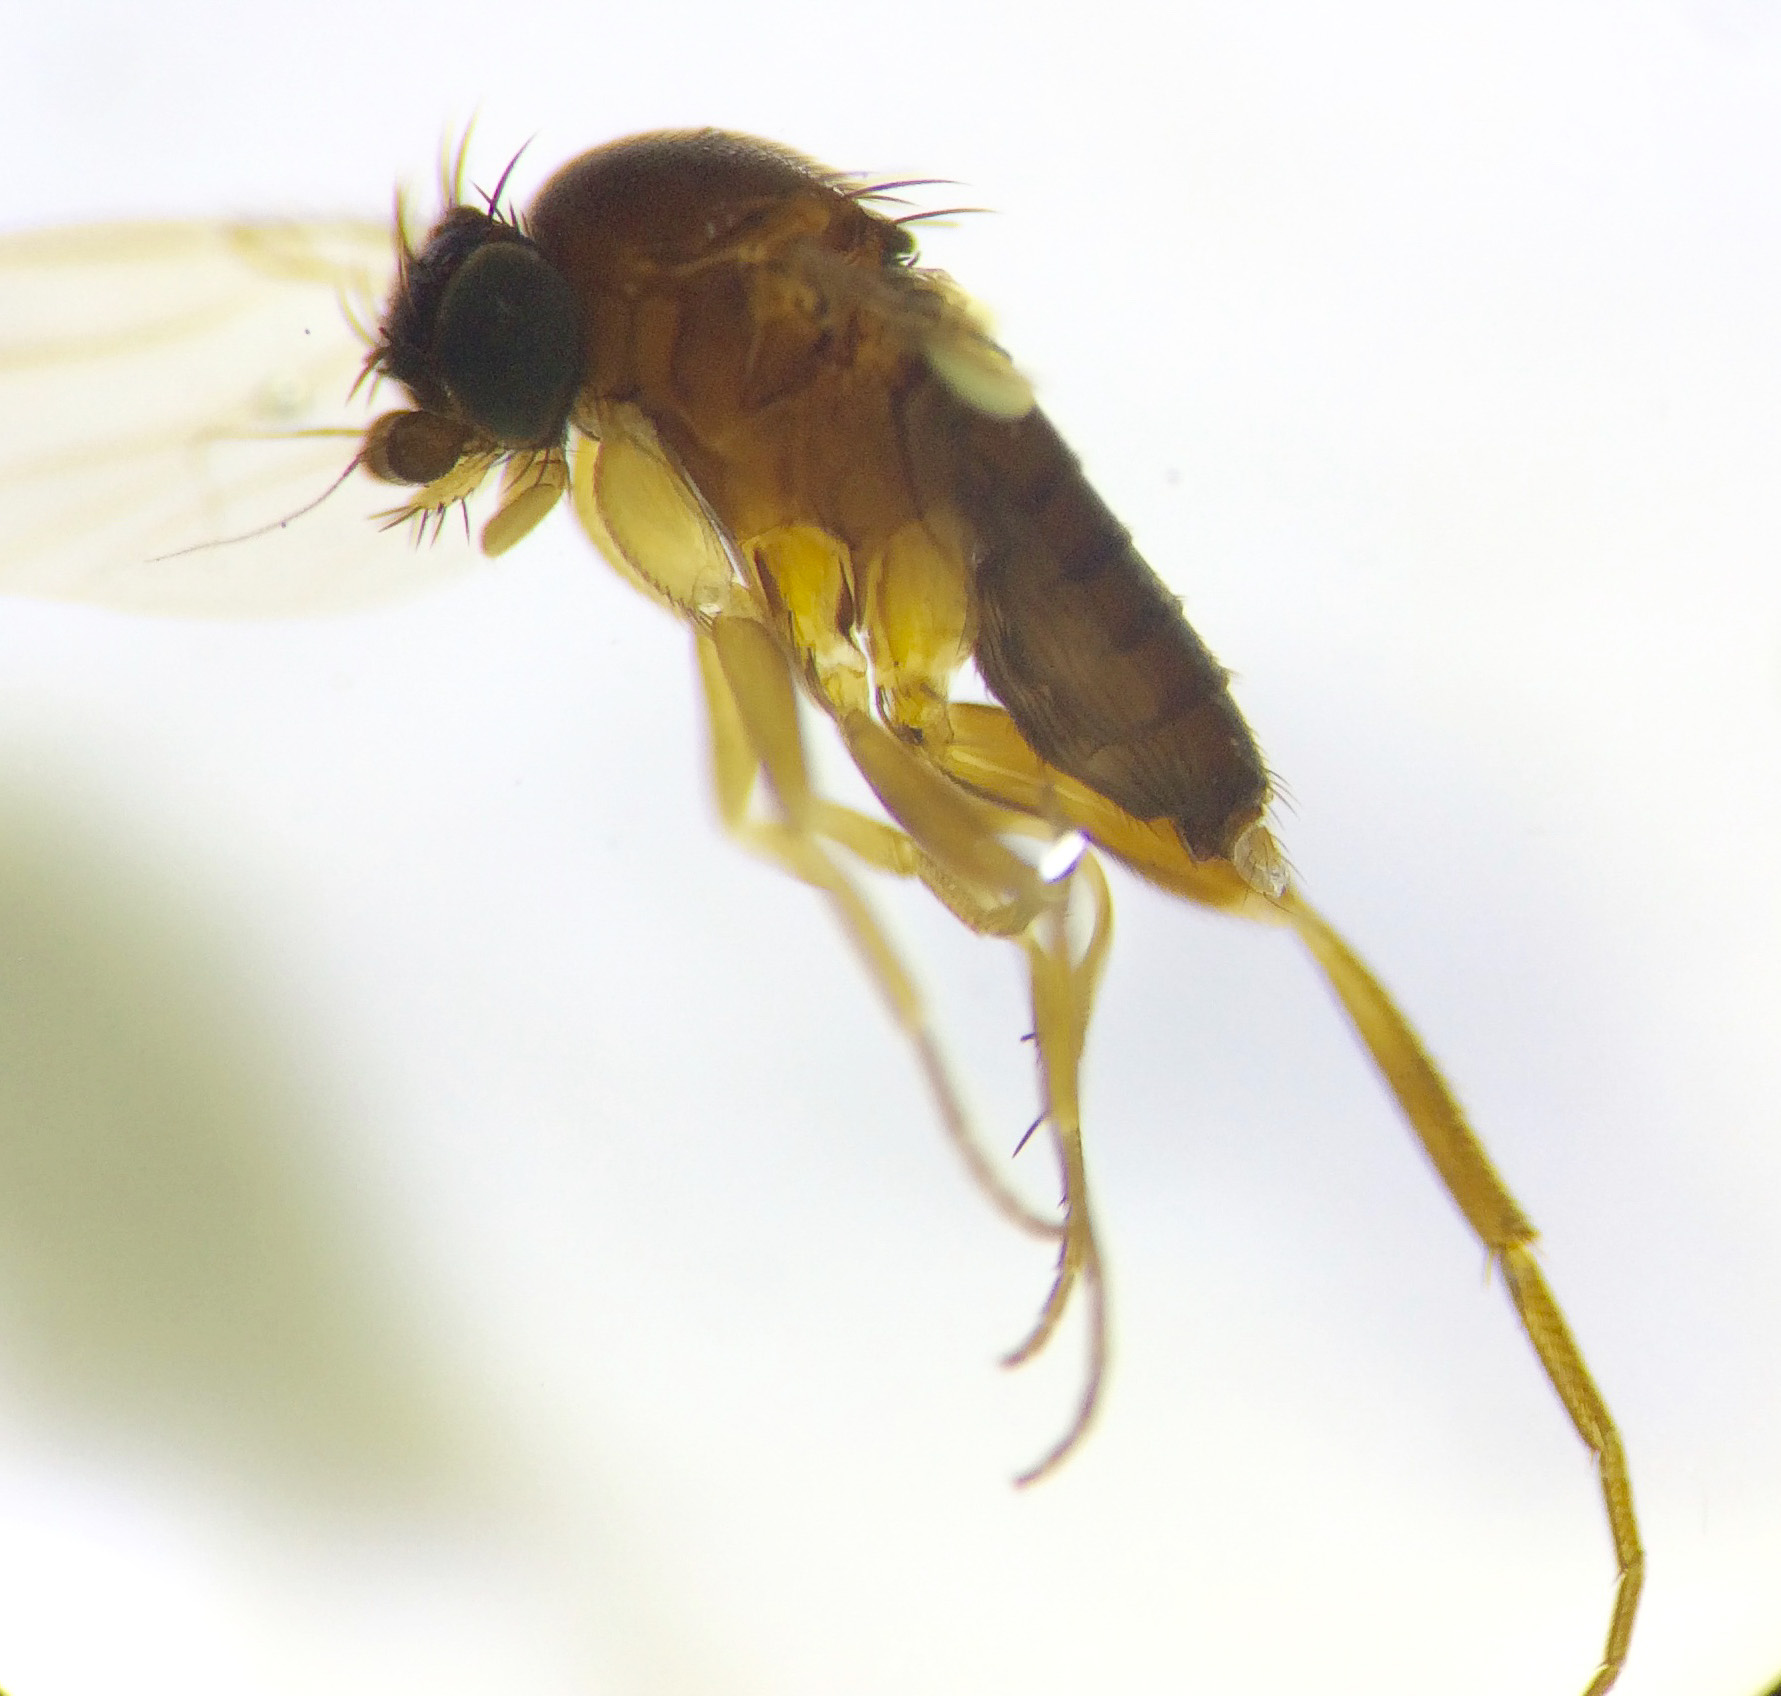 De talrika puckelflugorna hör till de minst kända insekterna i Sverige. Här en hane ur det enorma släktet Megaselia. Foto: Sibylle Häggqvist, Naturhistoriska riksmuseet